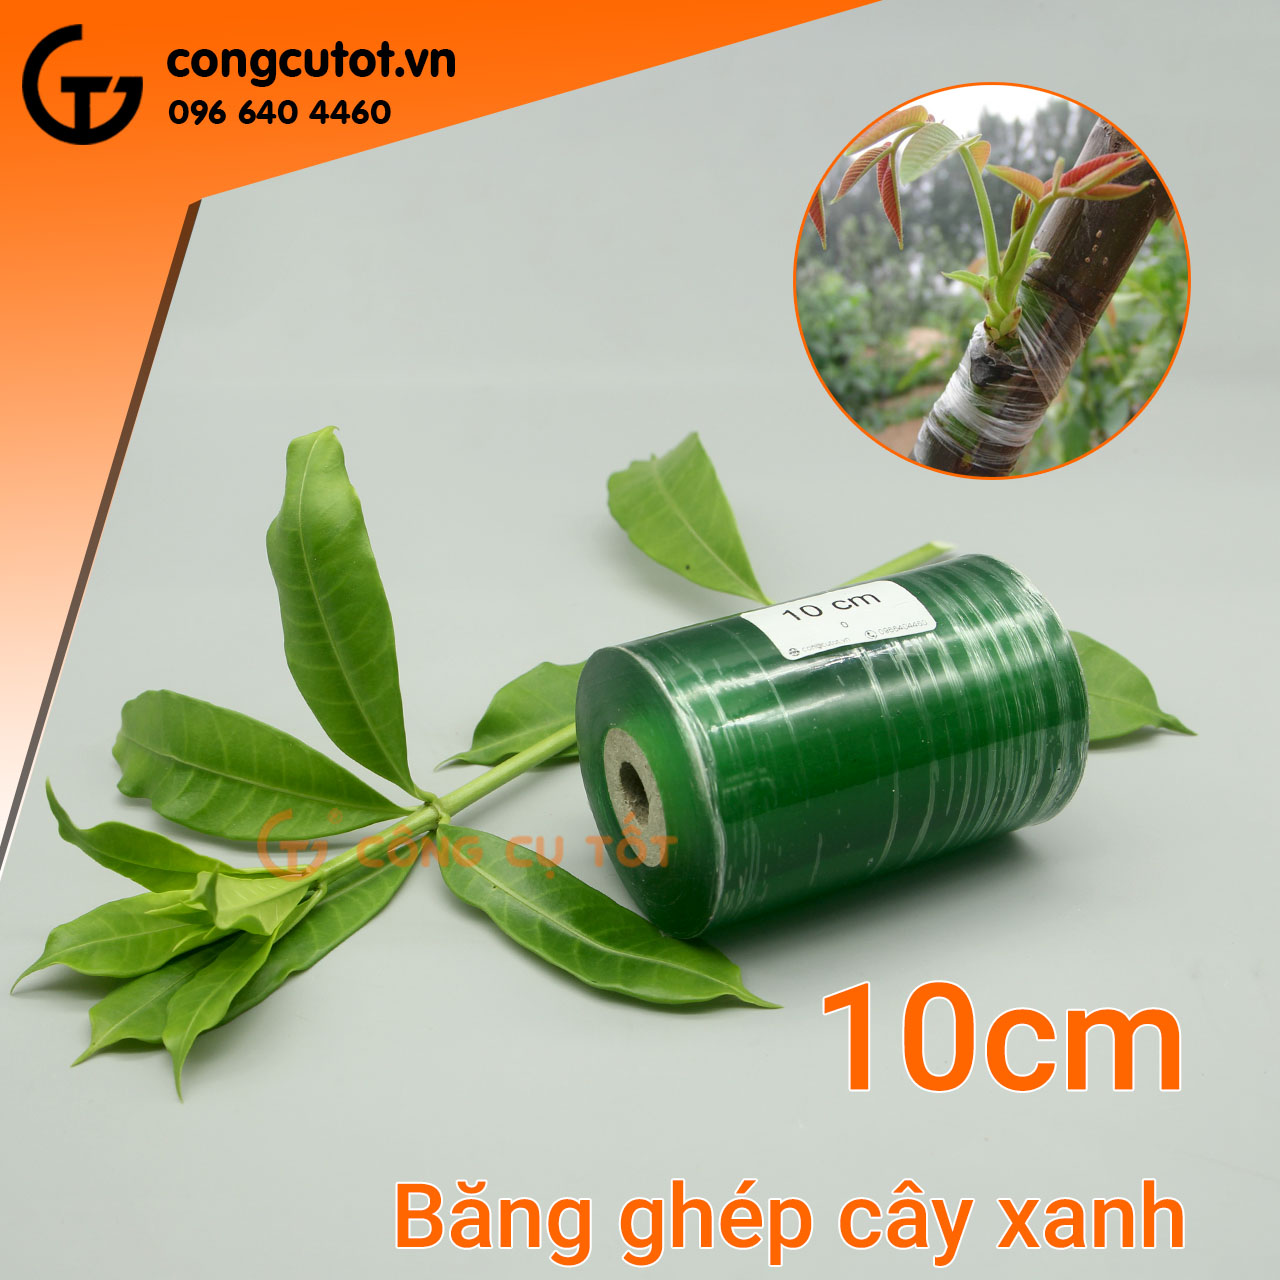 Băng ghép cây xanh khổ 10cm sử dụng rộng rãi, phổ biến trong nông nghiệp